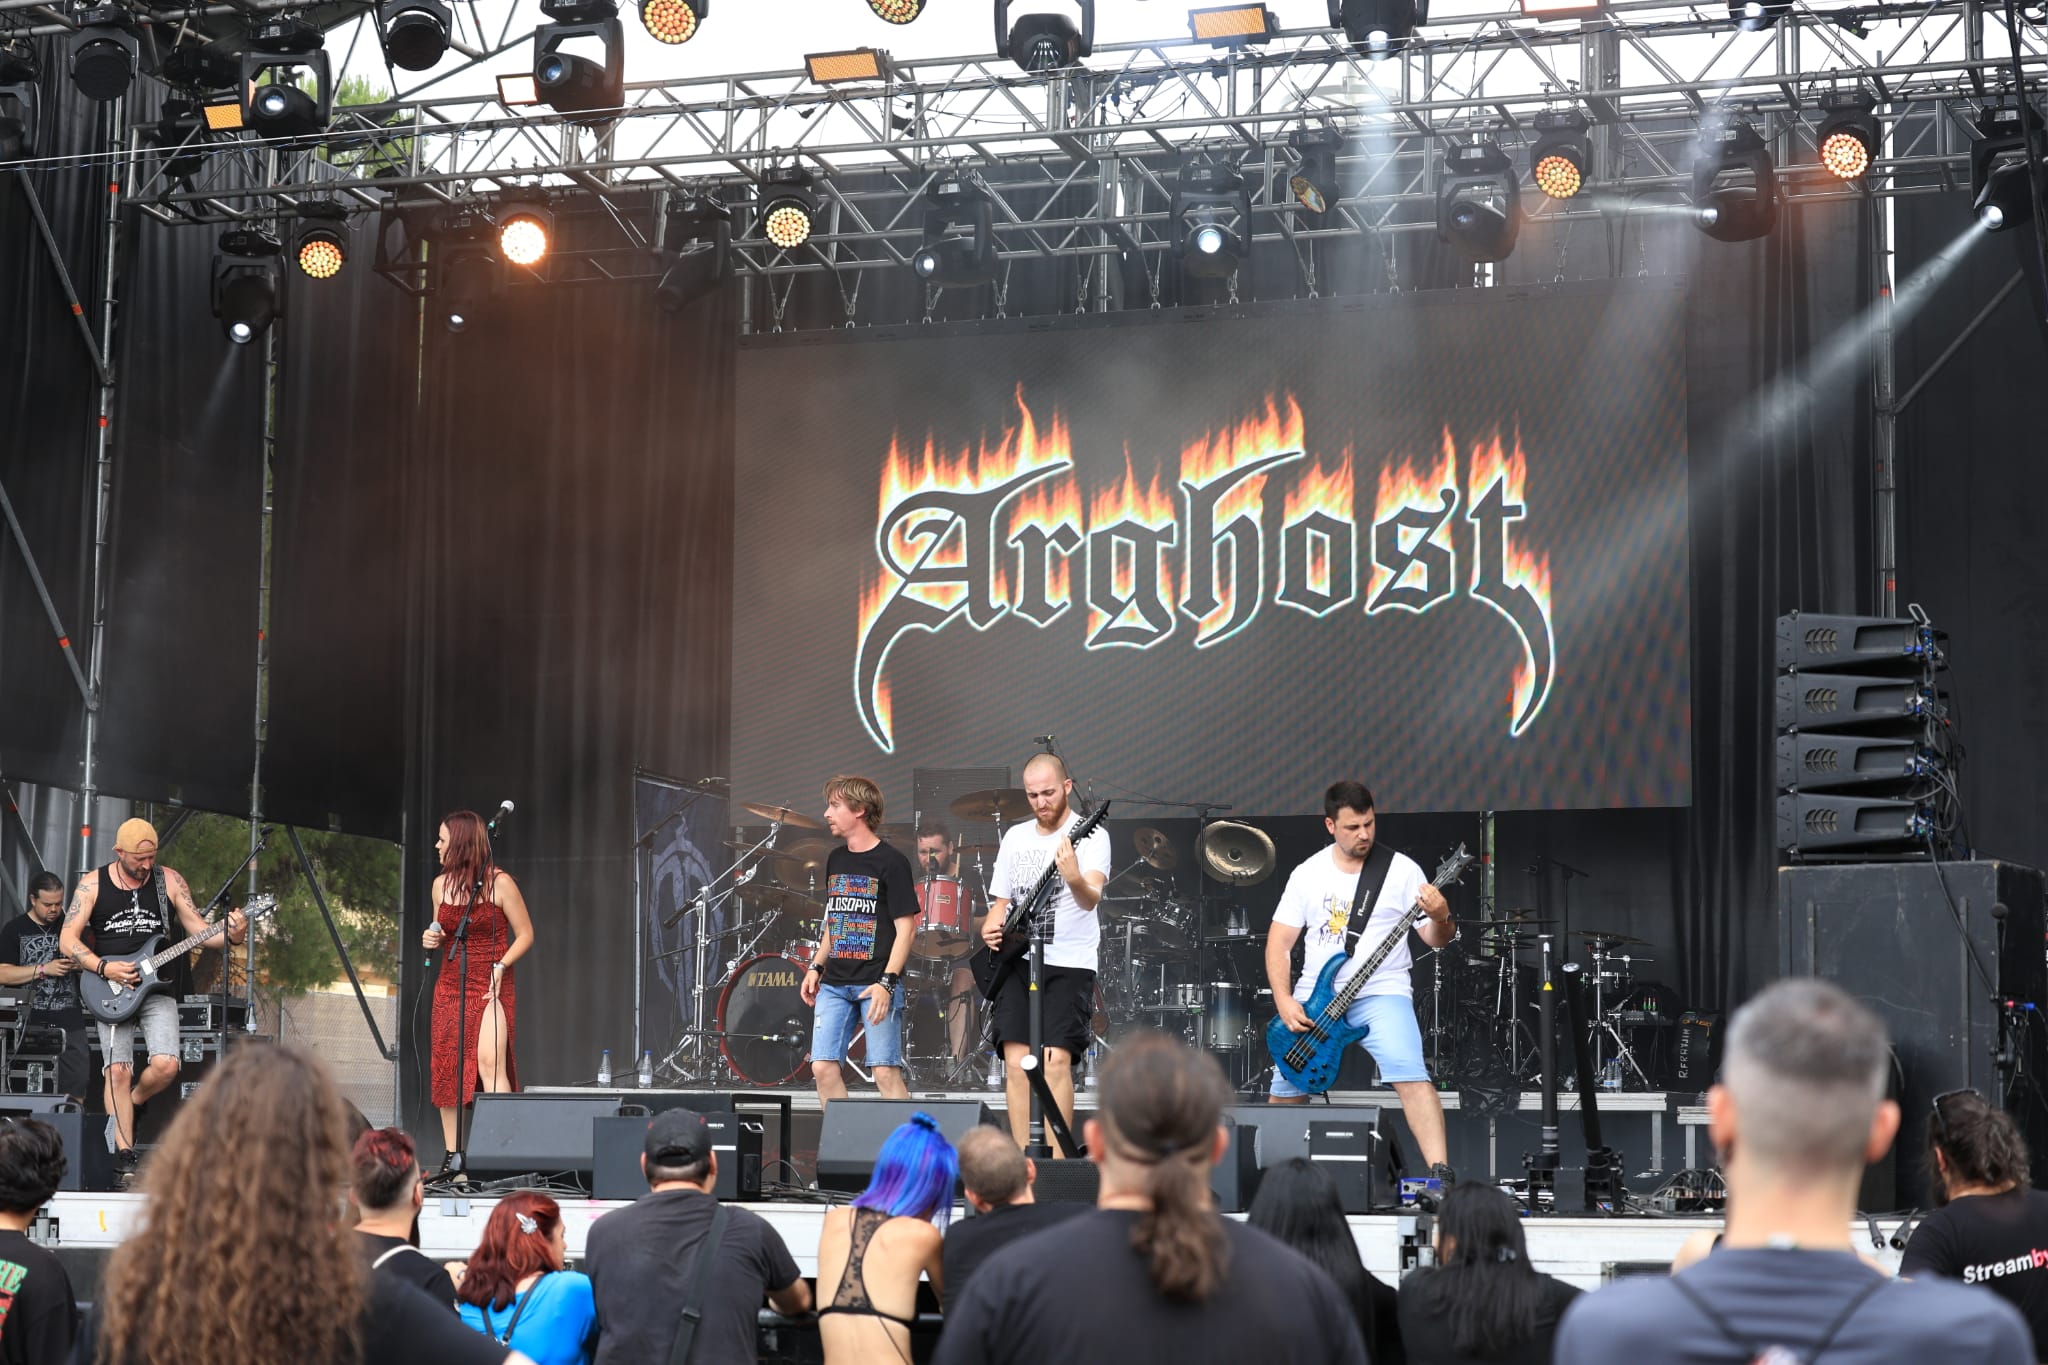 la-fiebre-rockera-se-concentro-en-el-xviii-festival-piorno-rock-demostrando-que-el-rock-no-ha-muerto